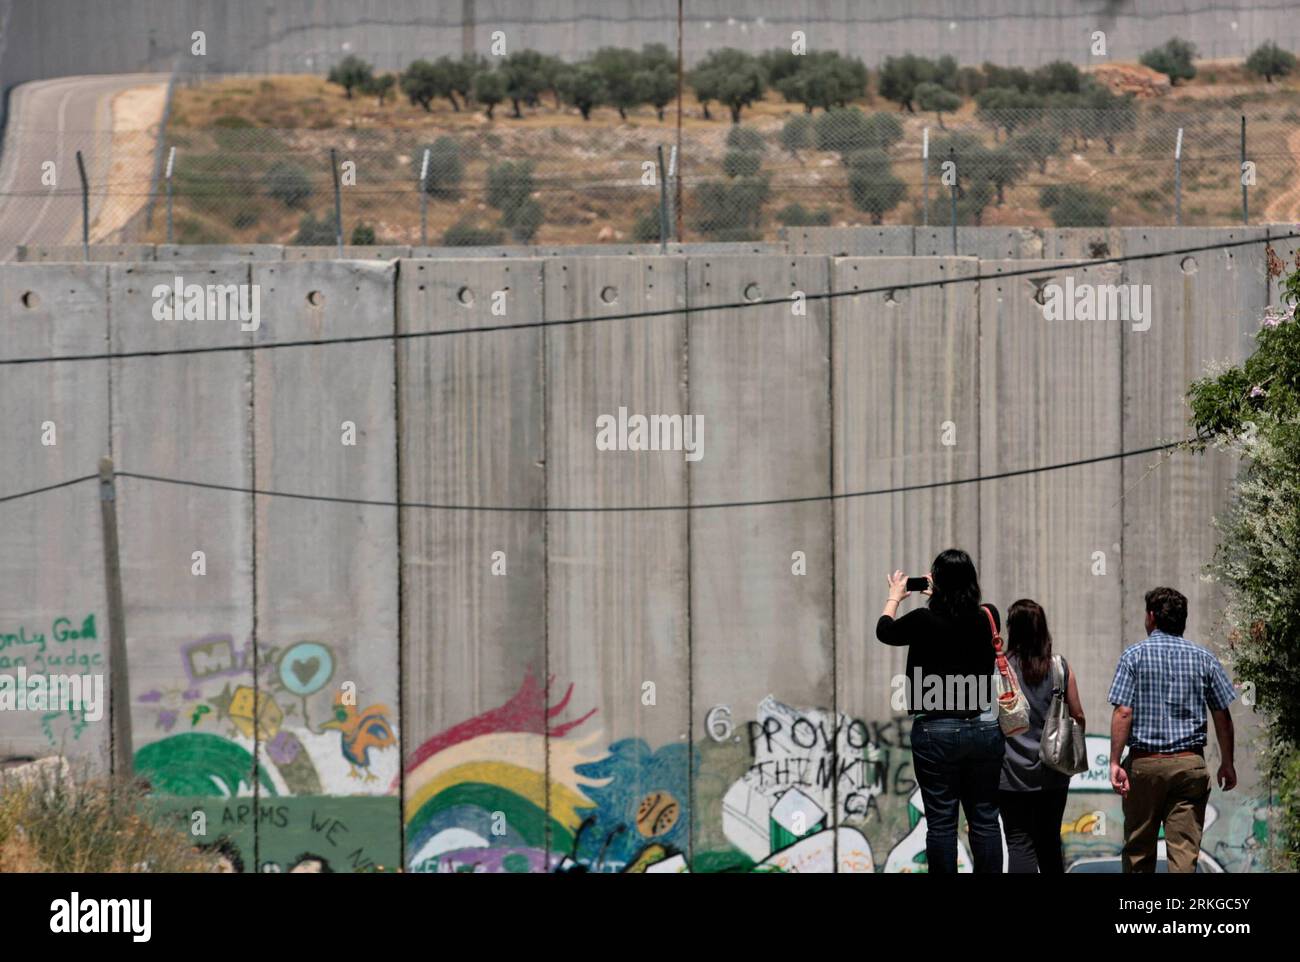 Bildnummer: 55578699 Datum: 08.07.2011 Copyright: imago/Xinhua (110708)-- CISGIORDANIA, 8 LUGLIO 2011 (Xinhua) -- i turisti stranieri scattano foto di una sezione del controverso muro di separazione israeliano nella città di Betlemme in Cisgiordania l'8 luglio 2011. I palestinesi celebreranno sabato il settimo anniversario della sentenza della Corte internazionale di giustizia dell'Aia del 9 luglio 2004, che ha definito illegale e dovrebbe essere abbattuta la barriera di separazione israeliana costruita intorno alla Cisgiordania. (Xinhua/Luay Sababa) MIDEAST-CISGIORDANIA-ISRAELE-BARRIERA DI SEPARAZIONE PUBLICATIONxNOTxINxCHN Gesell Foto Stock